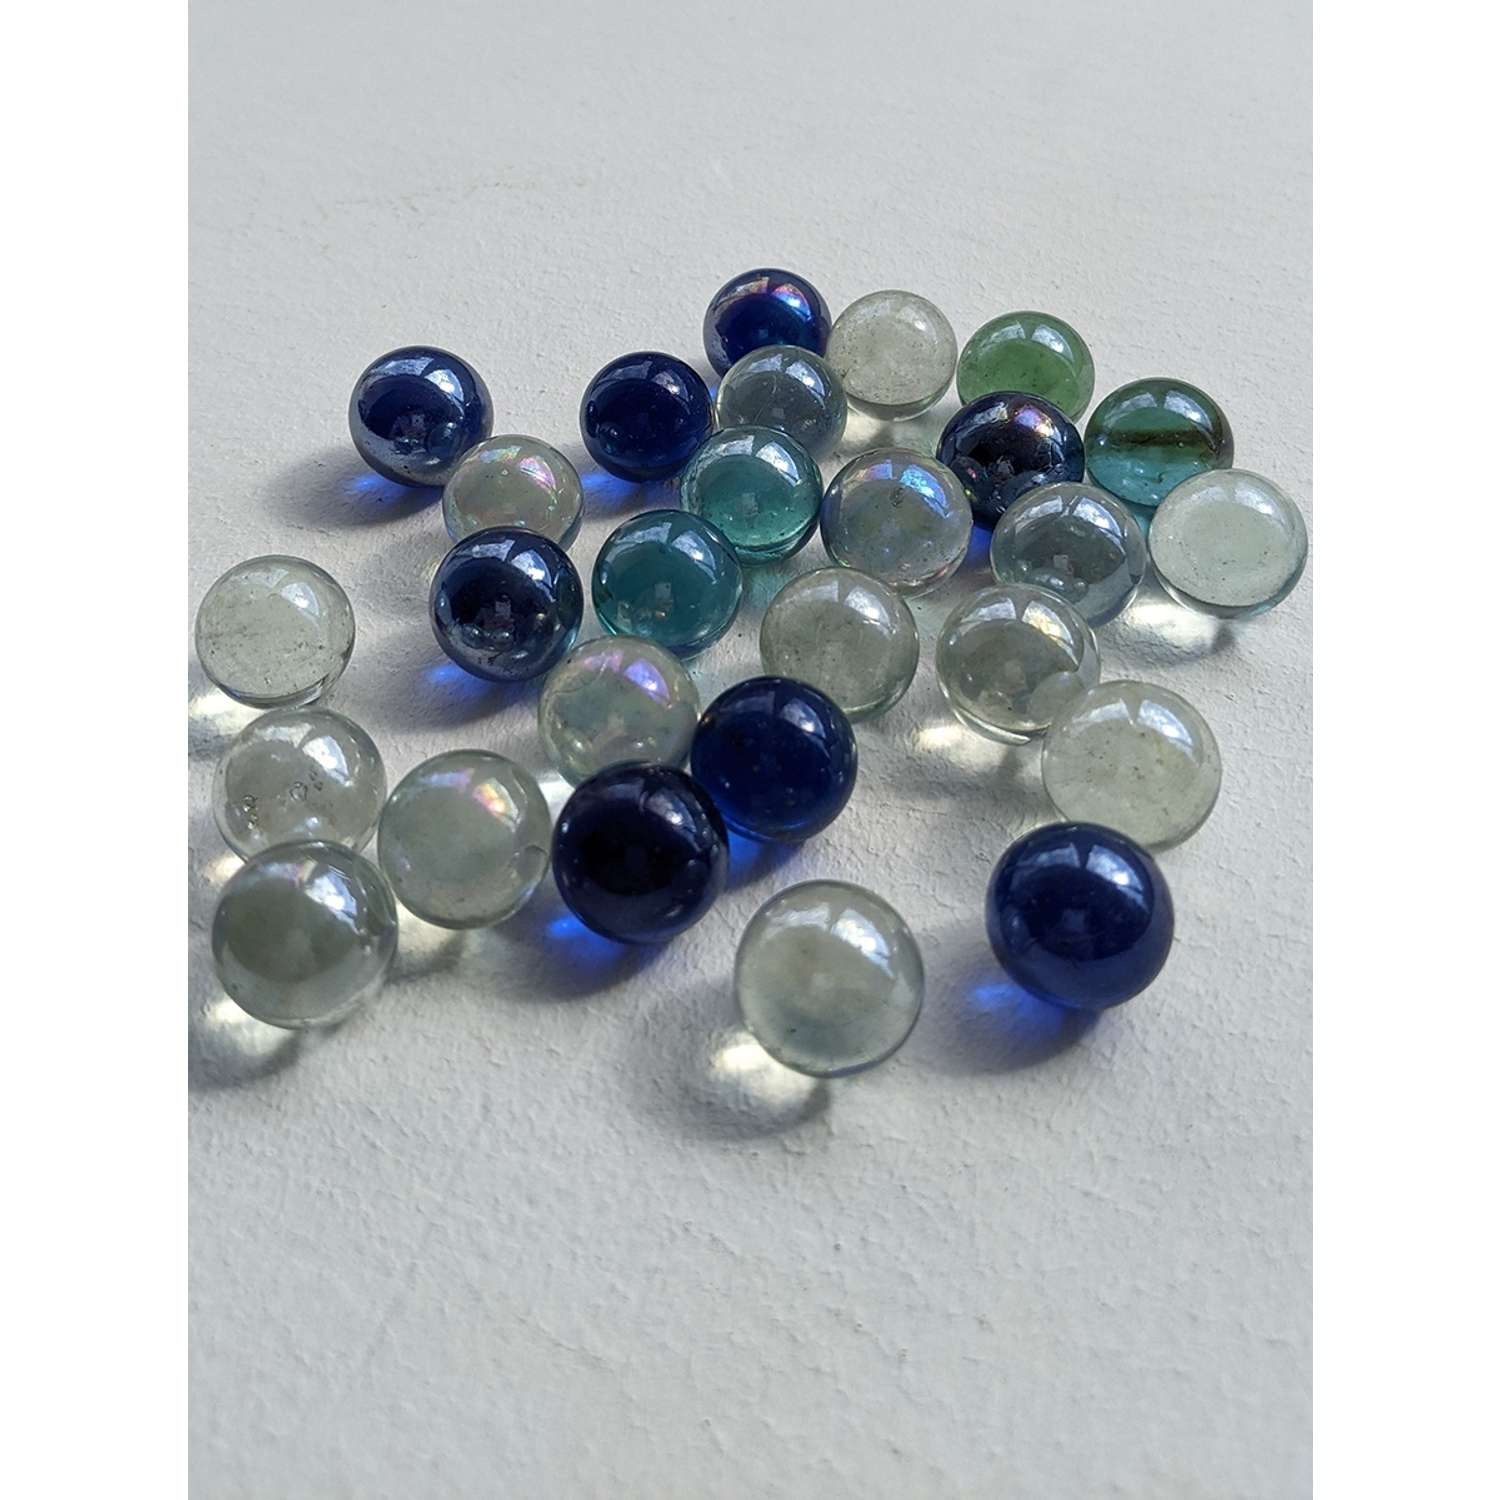 Стеклянные шарики Riota камешки марблс/грунт стеклянный прозрачный голубой синий 16 мм 30 шт - фото 2